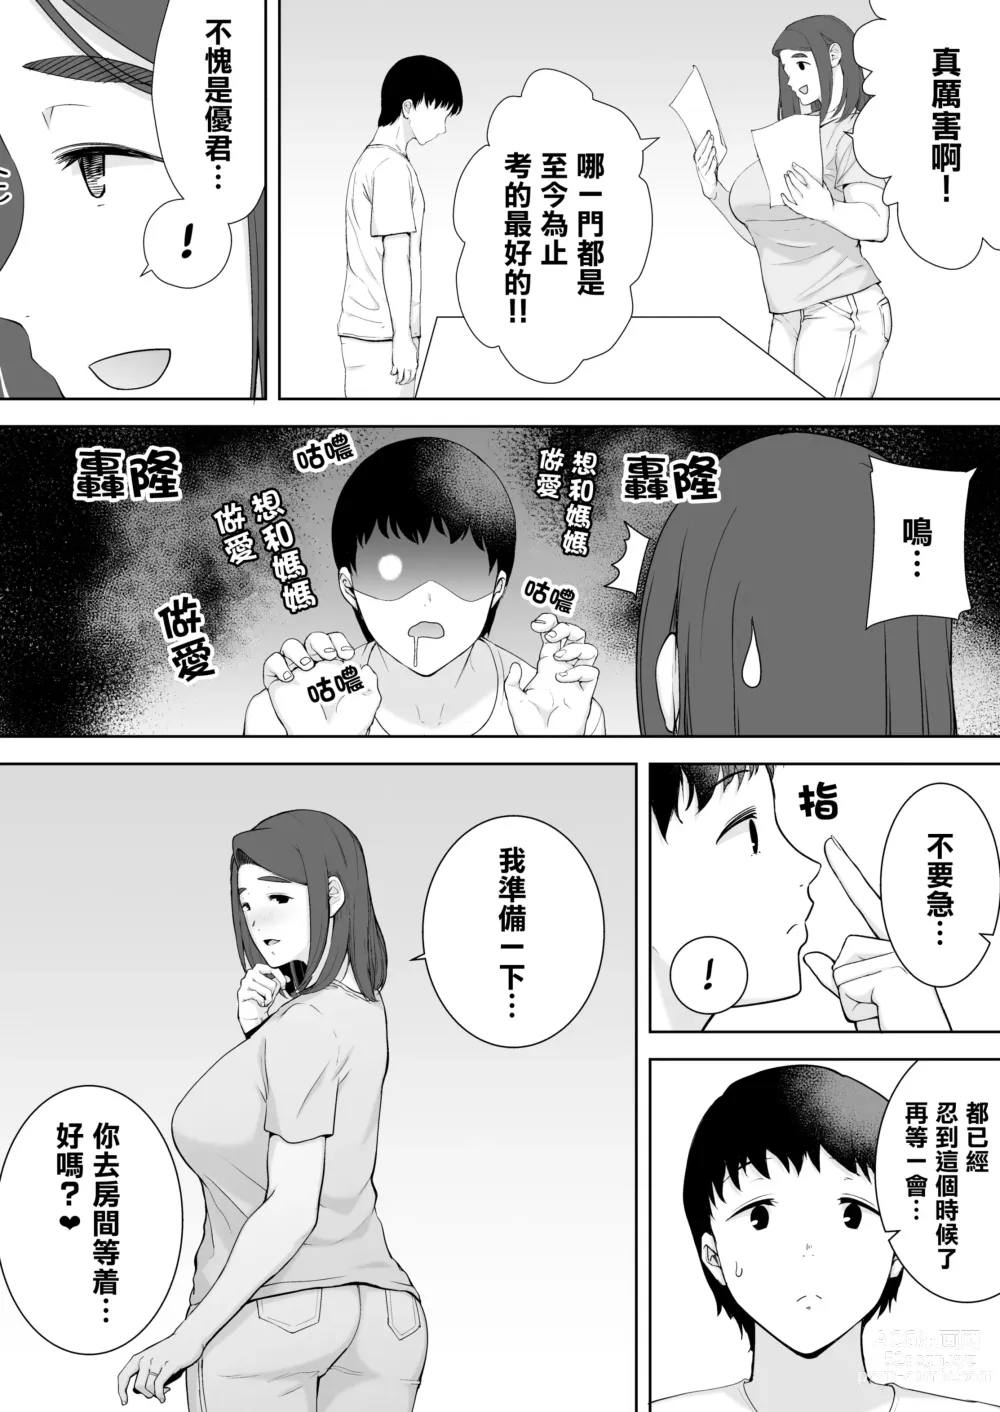 Page 24 of doujinshi 母印堂2